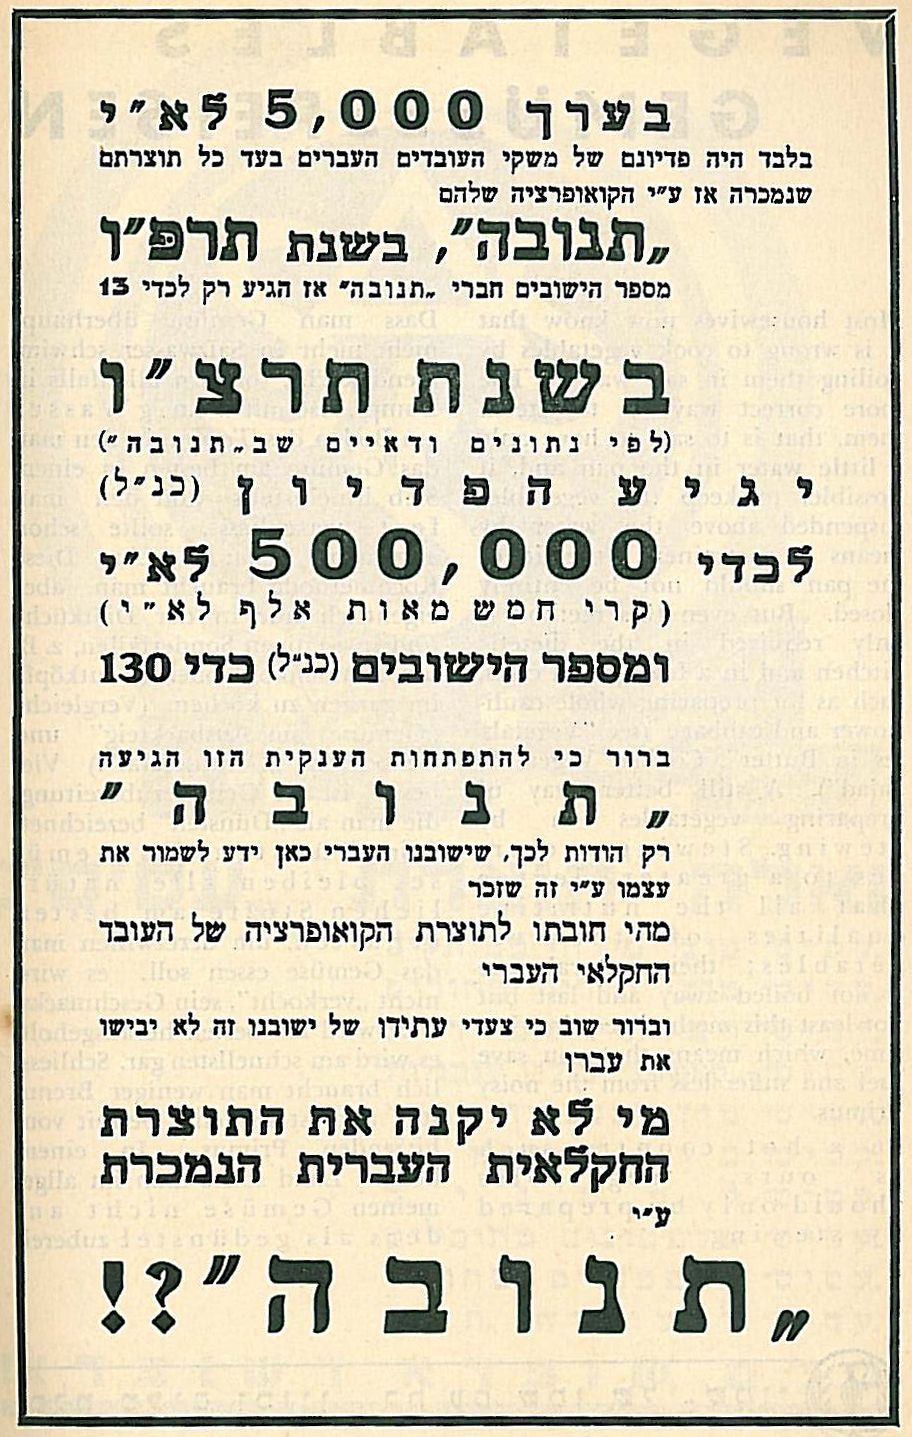 הישגיה של חברת "תנובה" בהיסטוריה של ארץ ישראל ! בשנים 1925 עד 1936 !